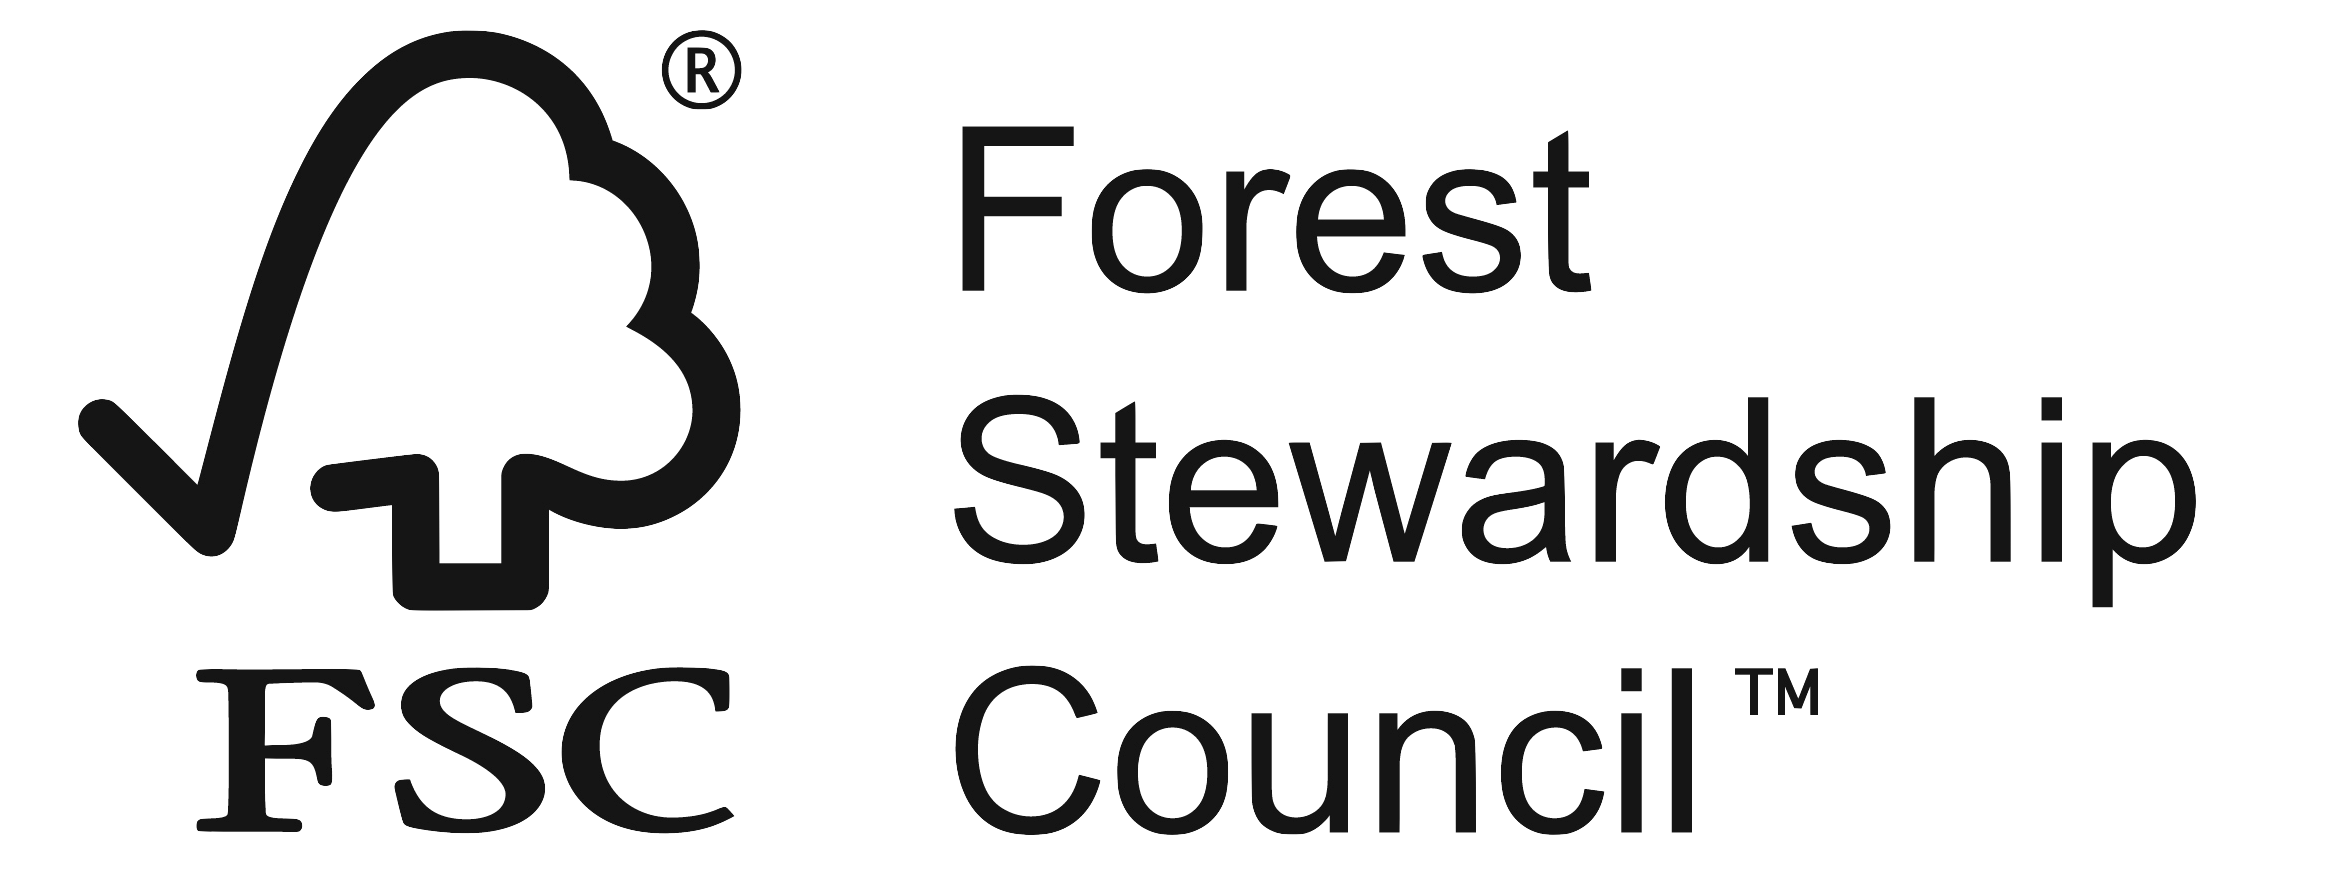 condominio sustentavel logo FSC